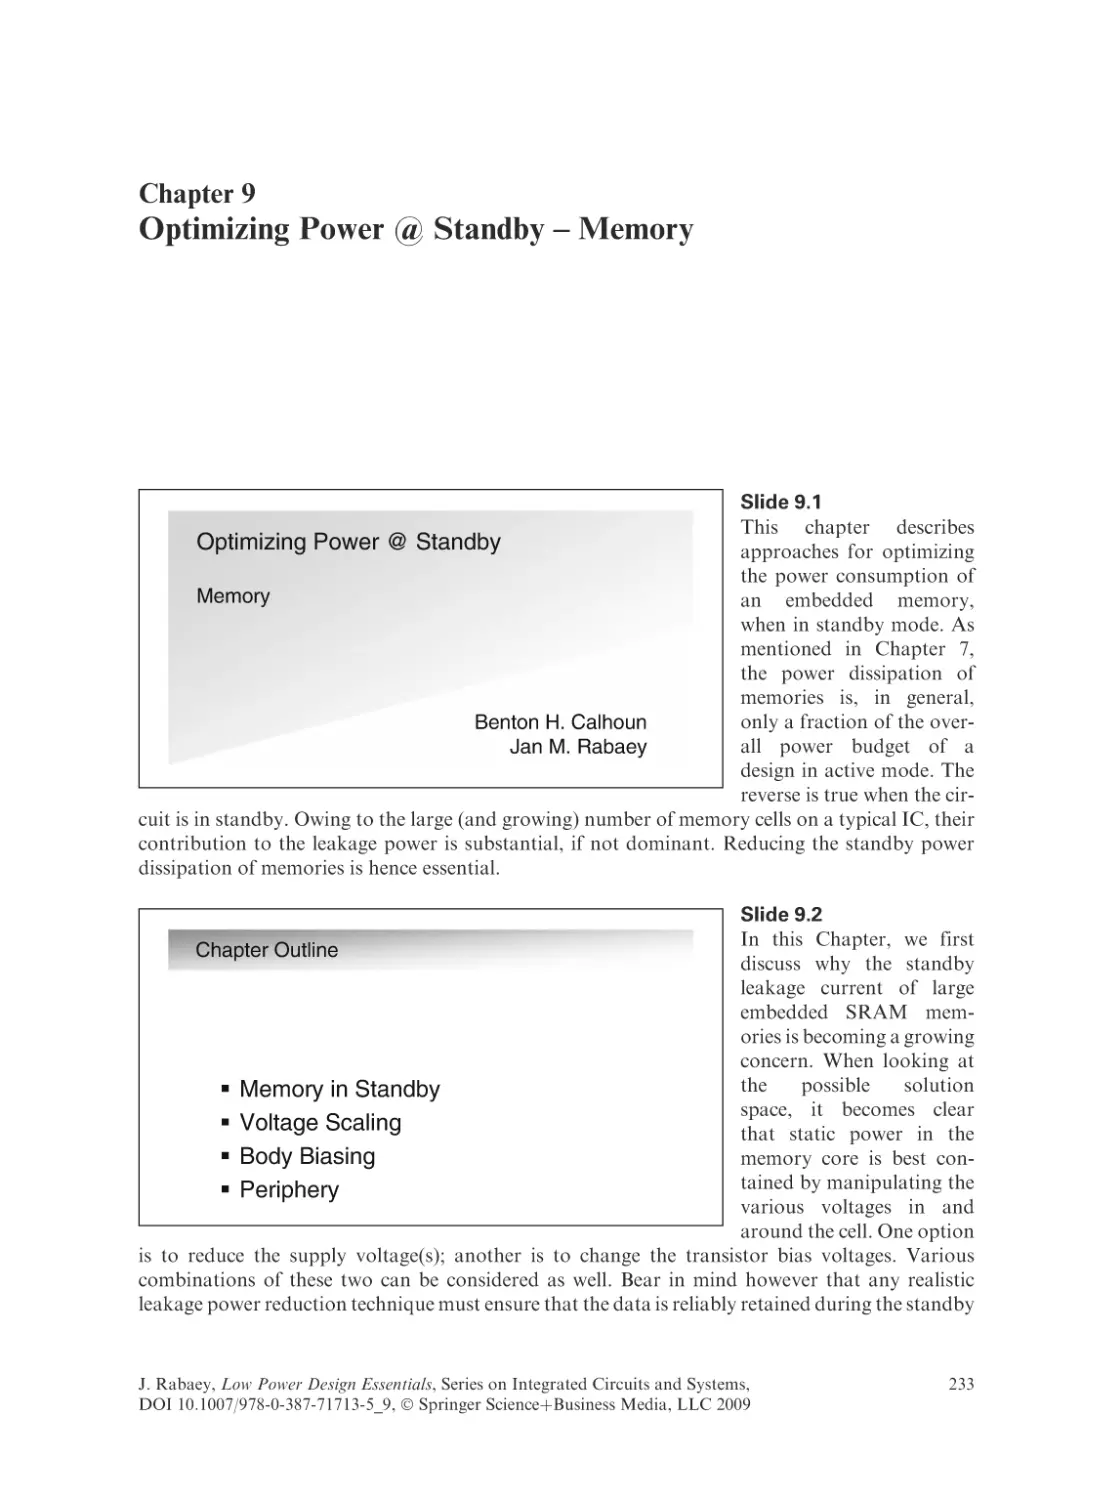 Optimizing Power @ Standby - Memory
Slide 9.1
Slide 9.2